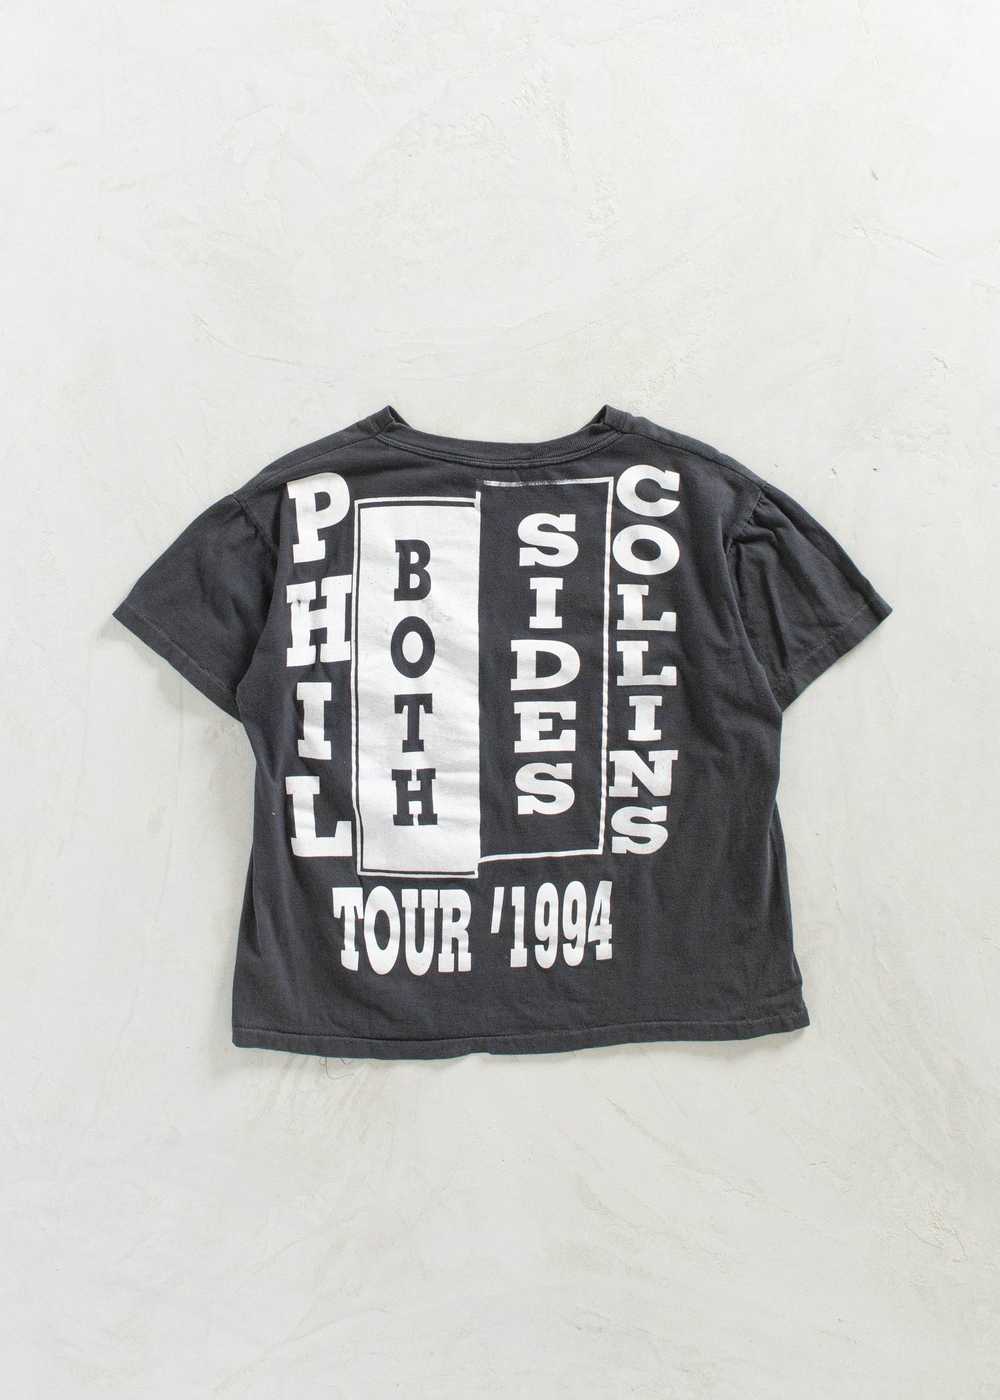 Vintage 1994 Phil Collins Both Sides Tour T-Shirt… - image 2